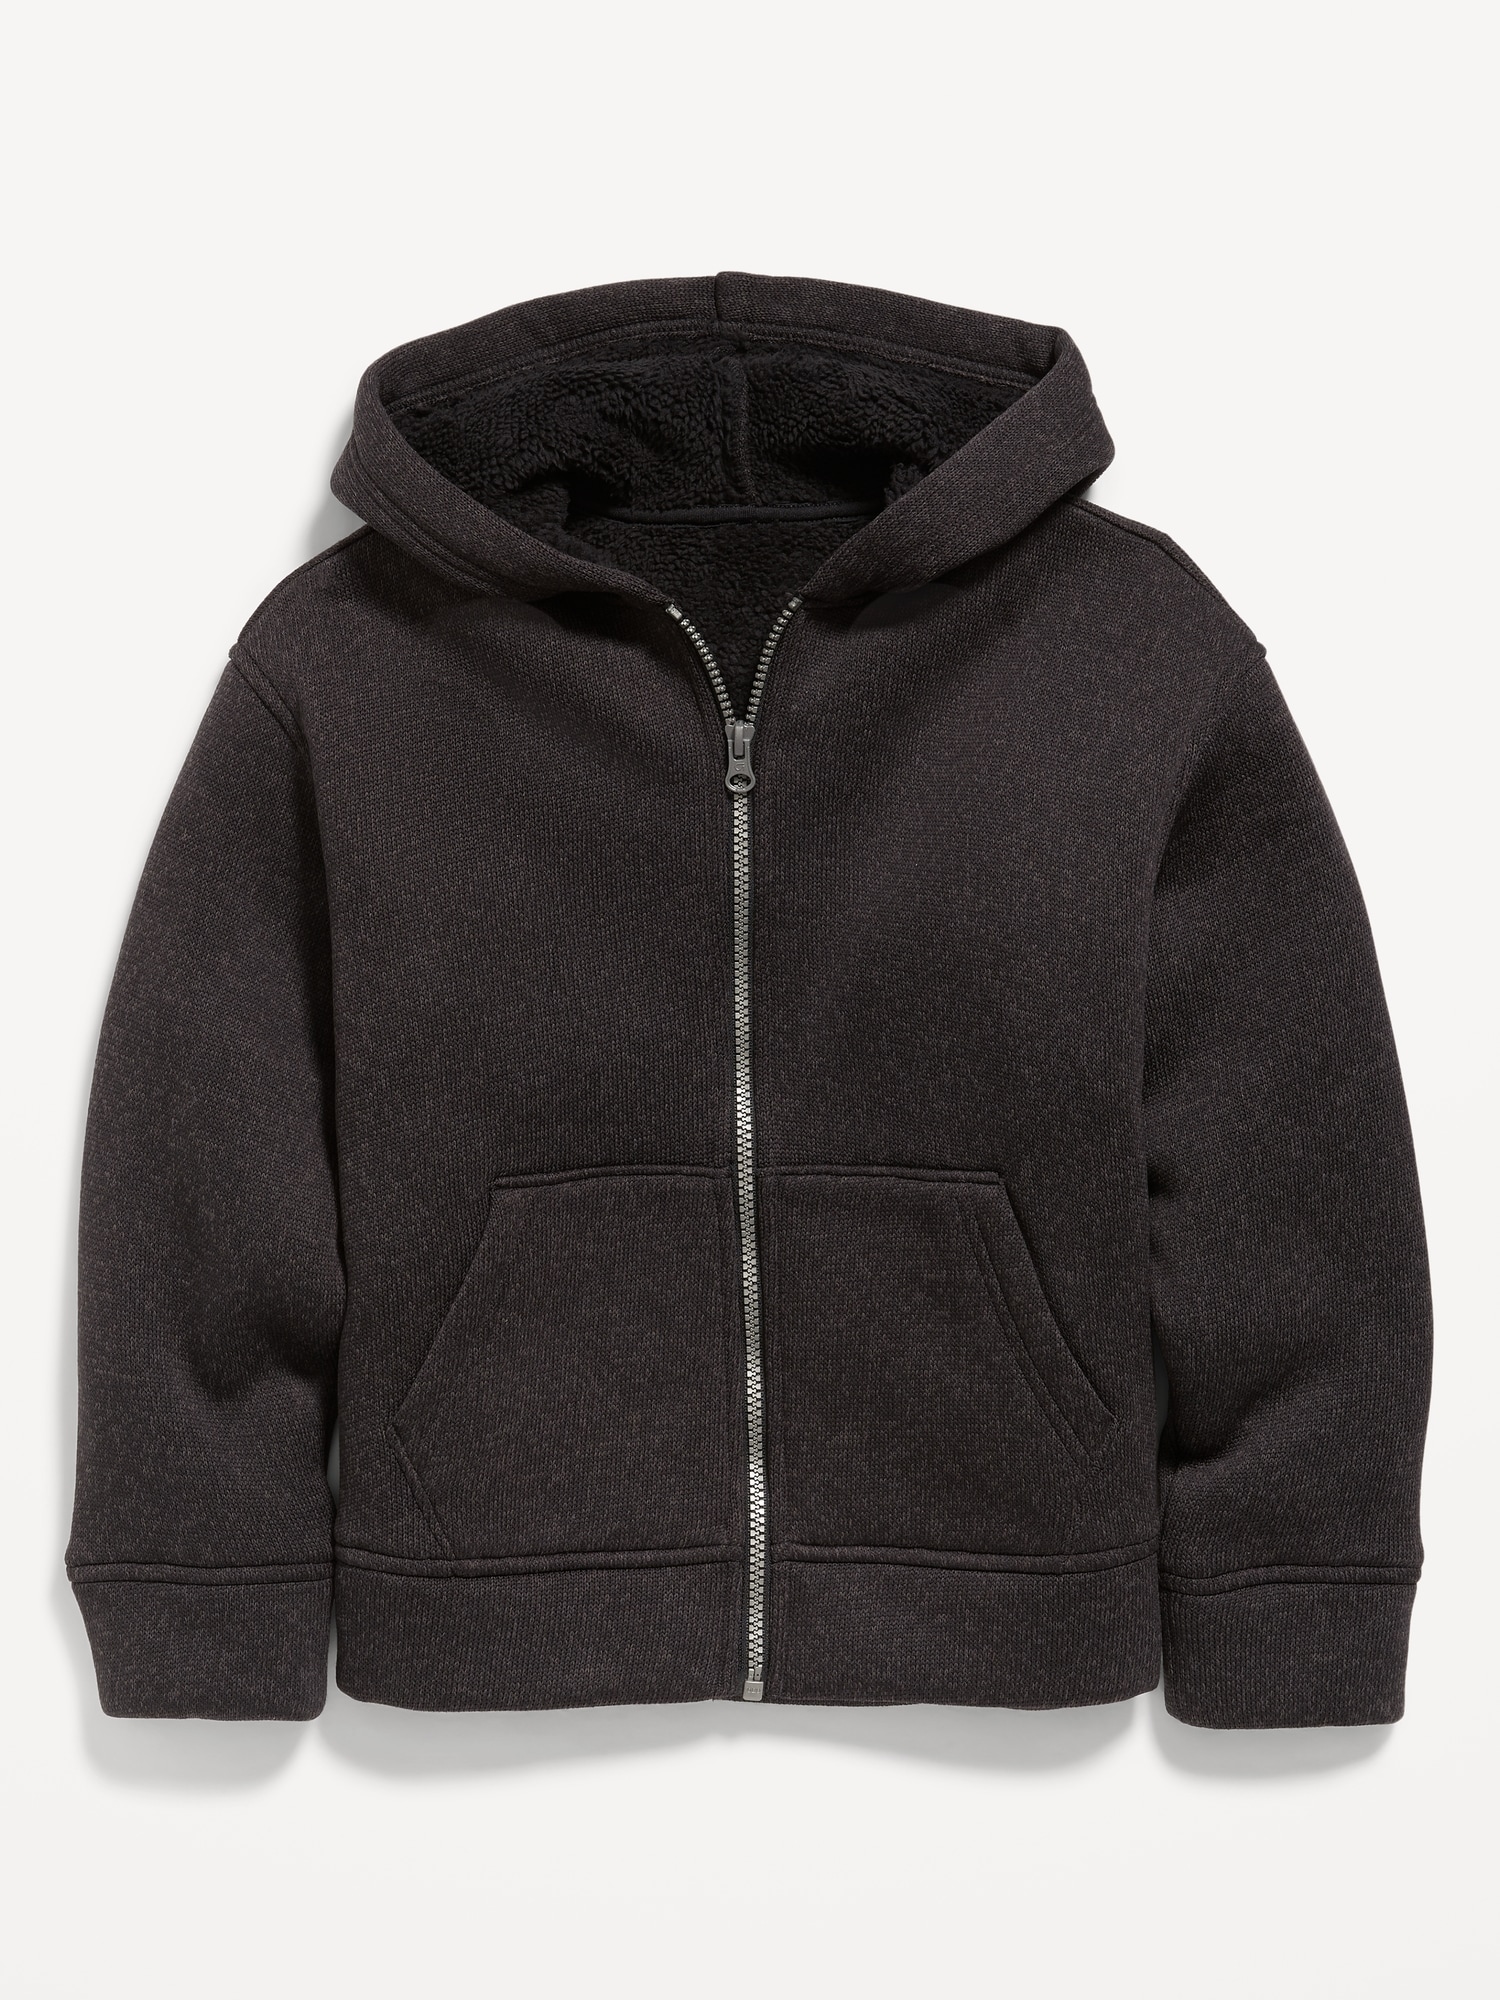 Cozy Sweater-Fleece Sherpa-Lined Zip Hoodie for Boys